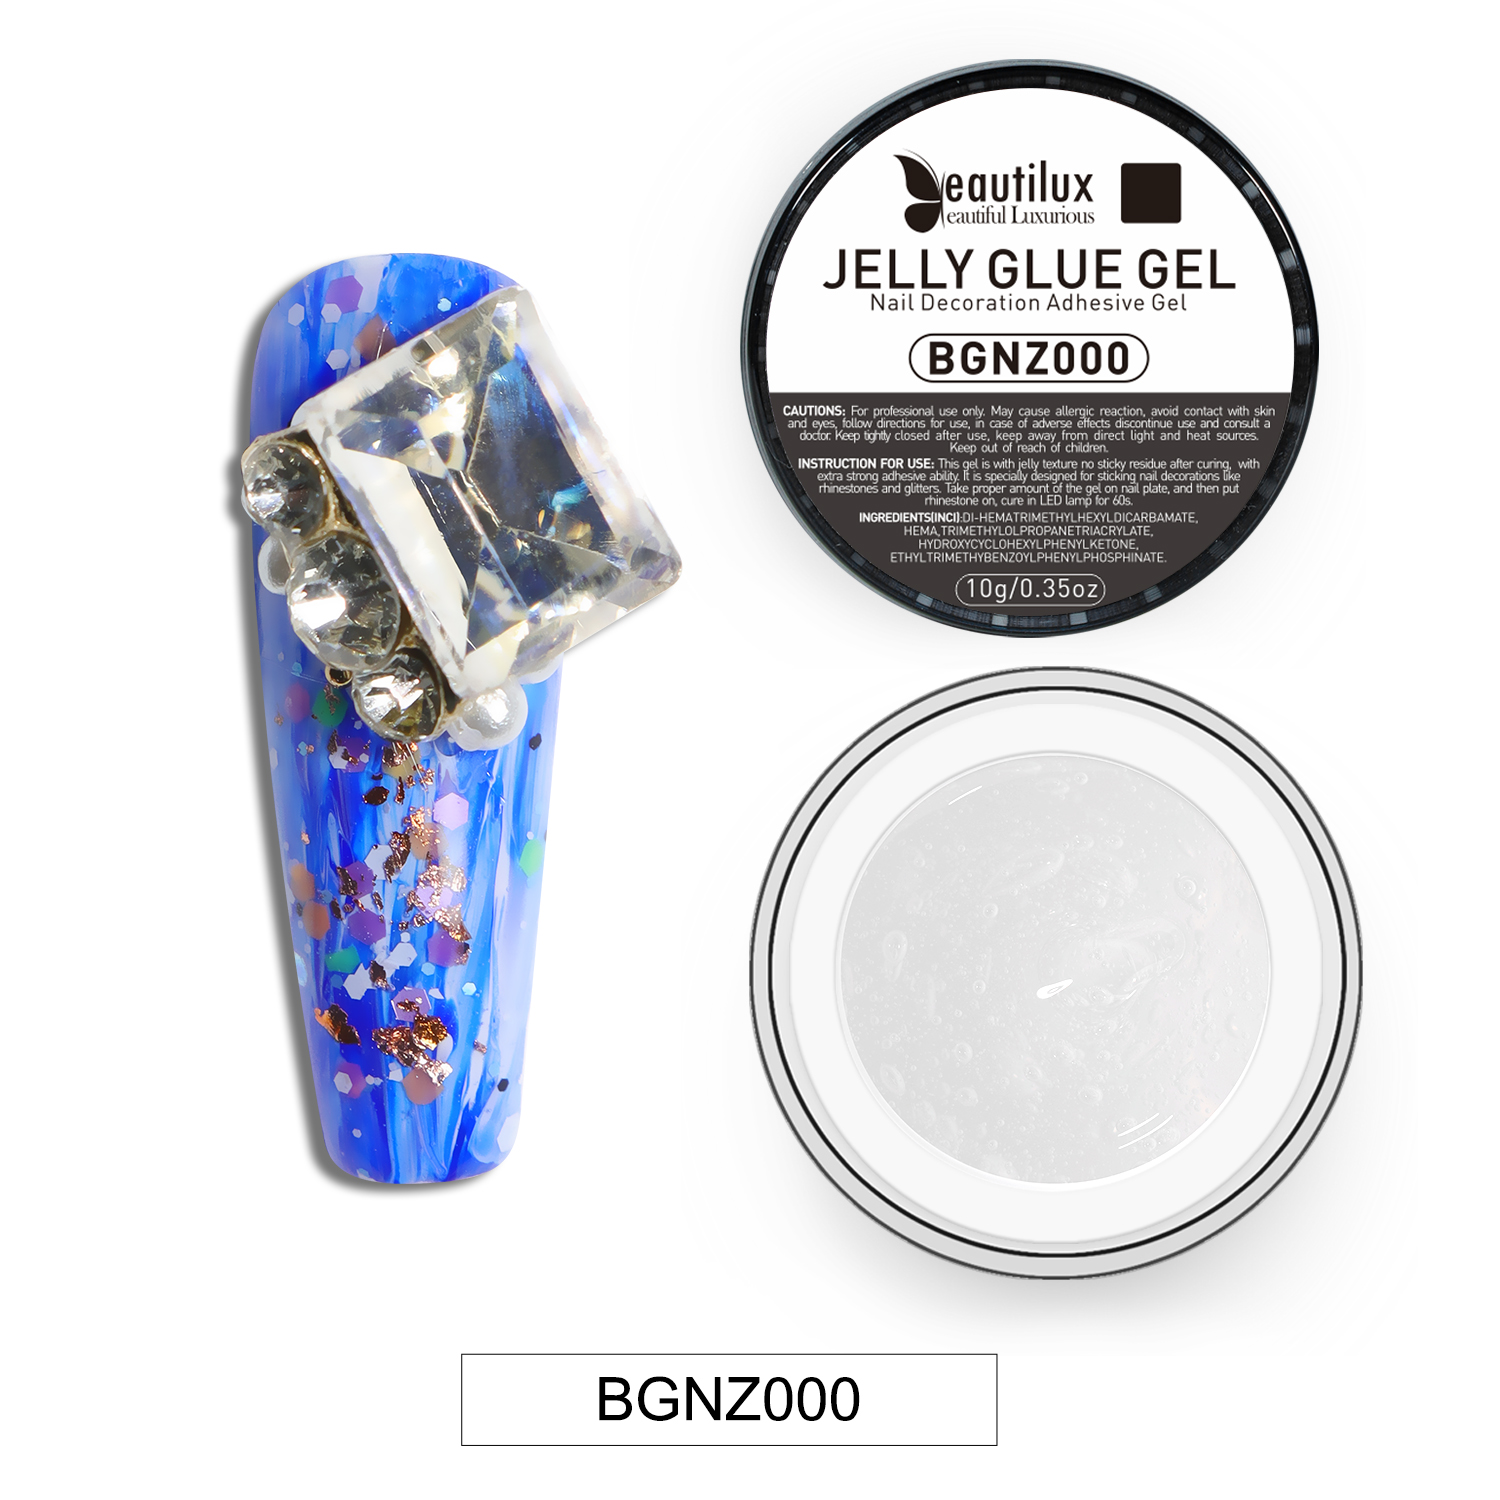 Jelly Glue Gel | Adhesive Gel|  BGNZ000